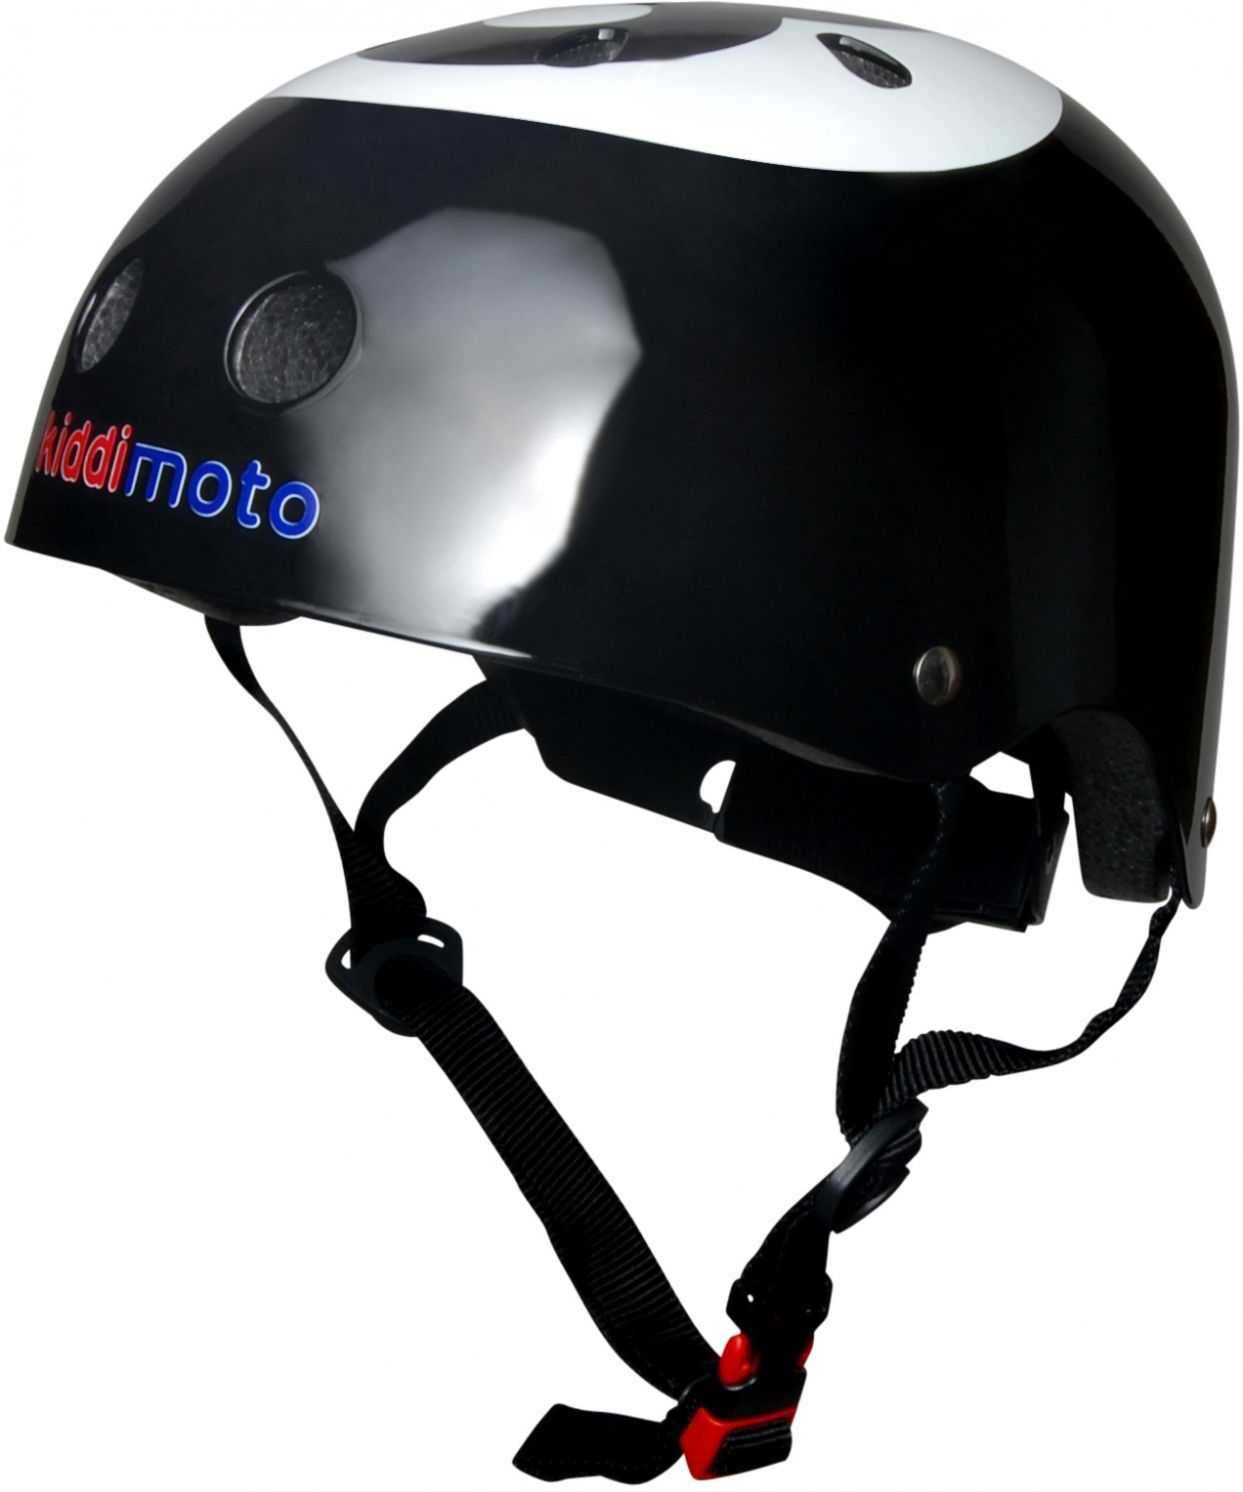 Шлем детский Kiddimoto бильярдный шар, чёрный, размер M 53-58см фото 